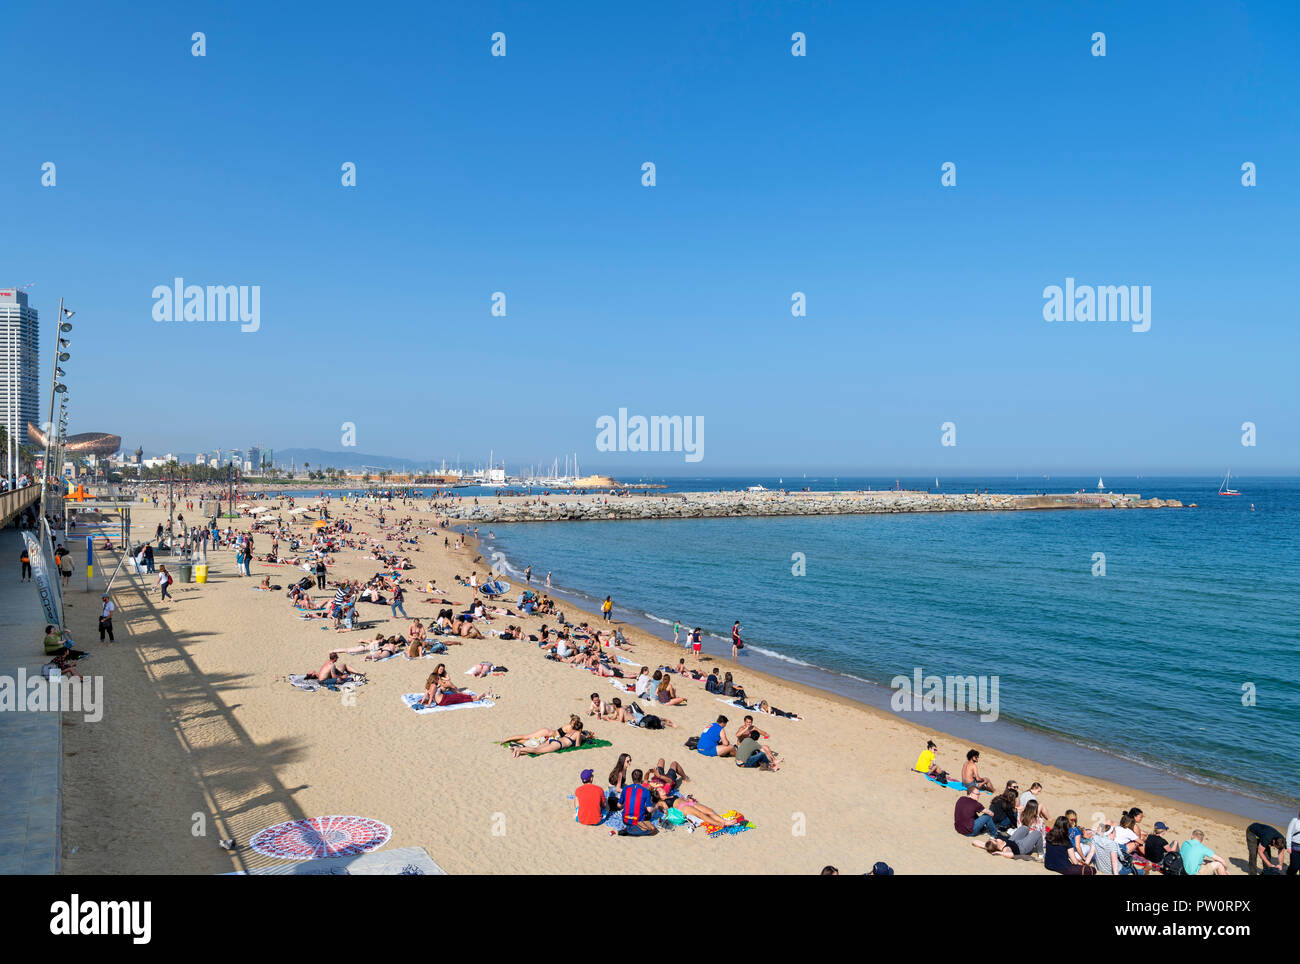 La plage de Barcelone. La plage de La Barceloneta (Platja de la Barceloneta), Barcelone, Espagne Banque D'Images